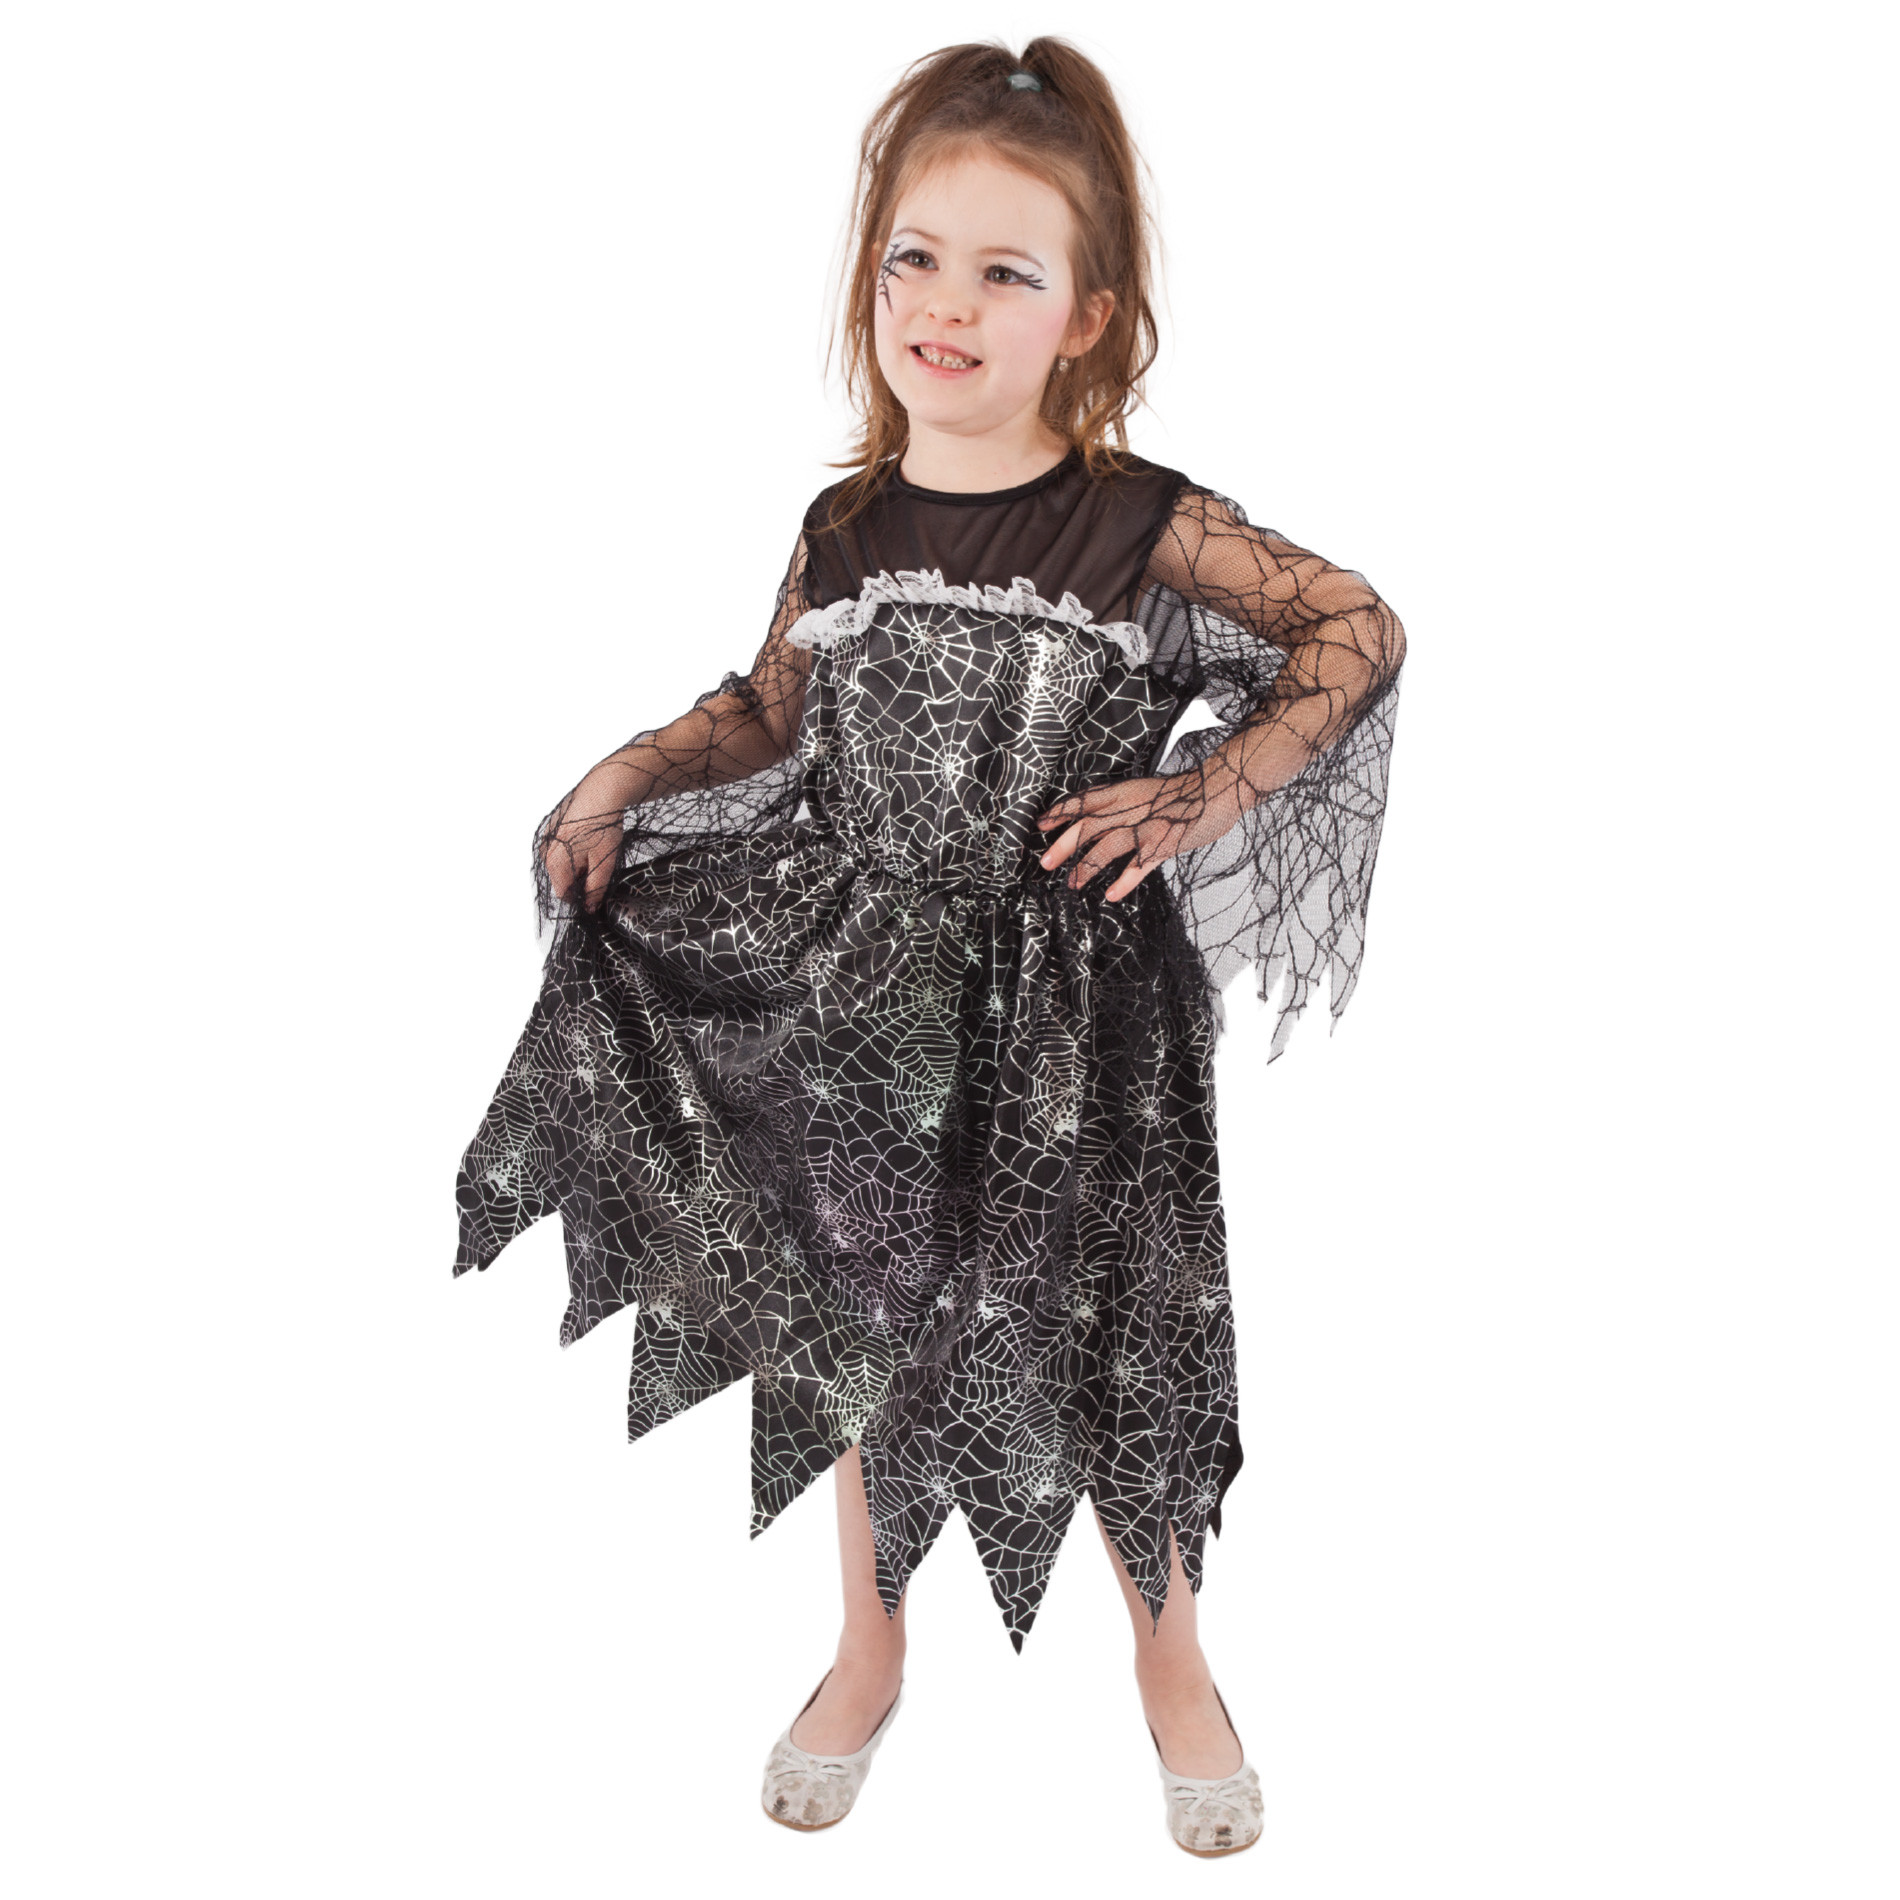 Dětský kostým čarodějnice s pavučinou (M) e-obal